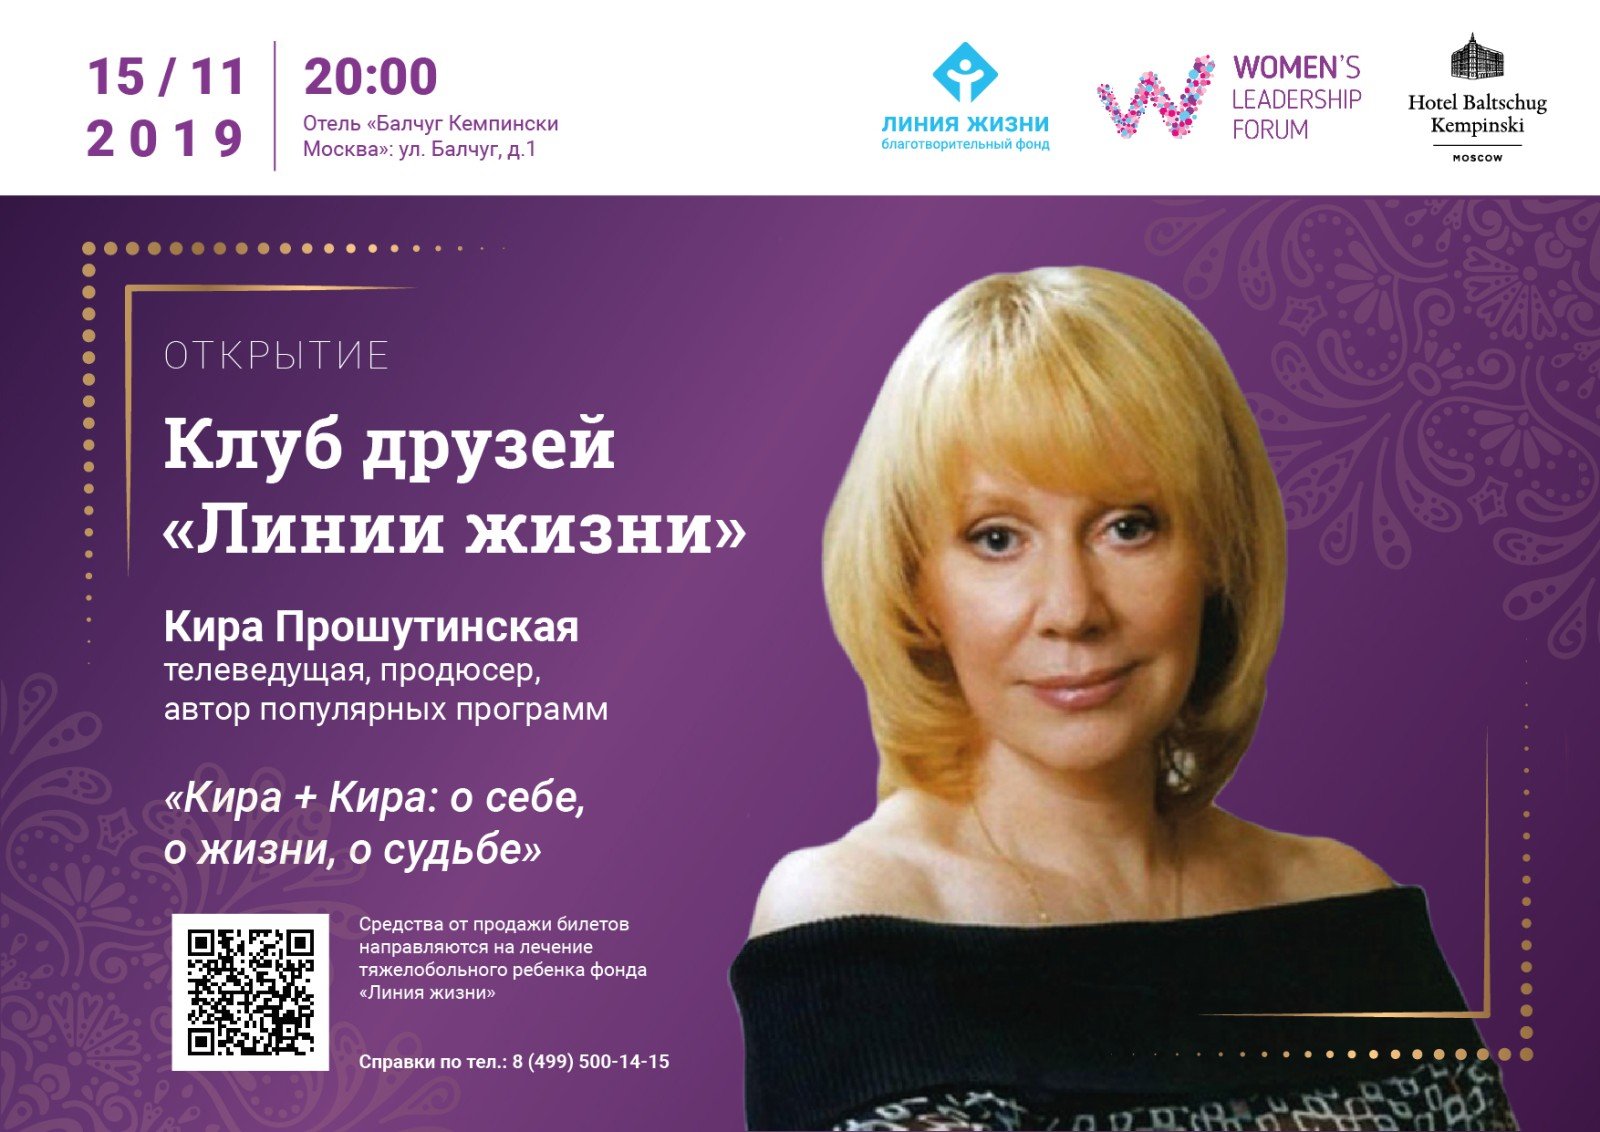 Телеведущая Кира Прошутинская приглашает в Клуб друзей фонда «Линия жизни»